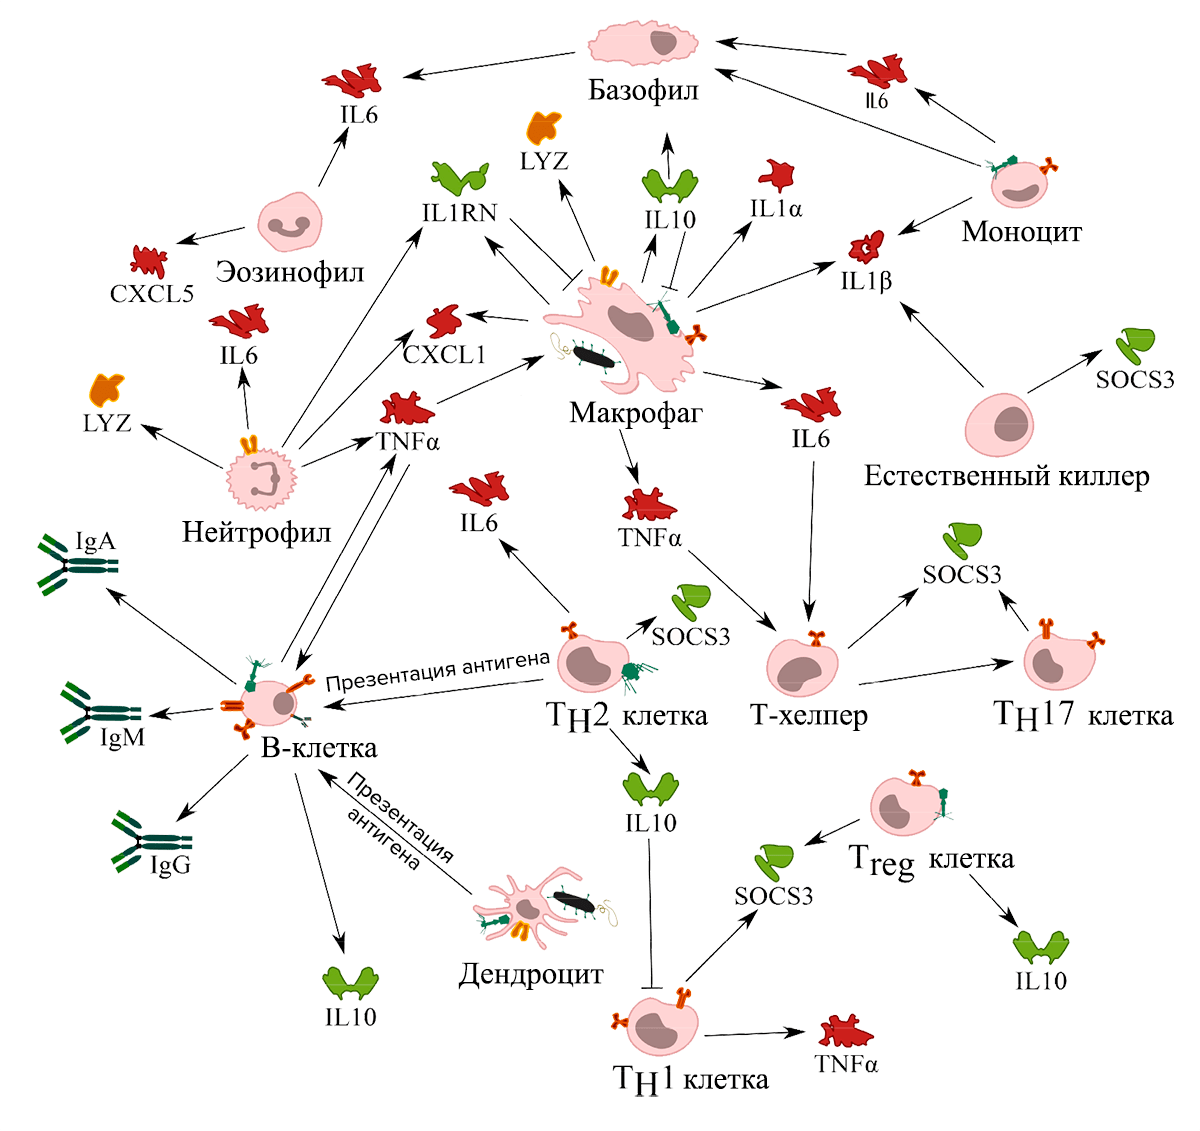 Клетки иммунной системы, с которыми взаимодействуют бактериофаги